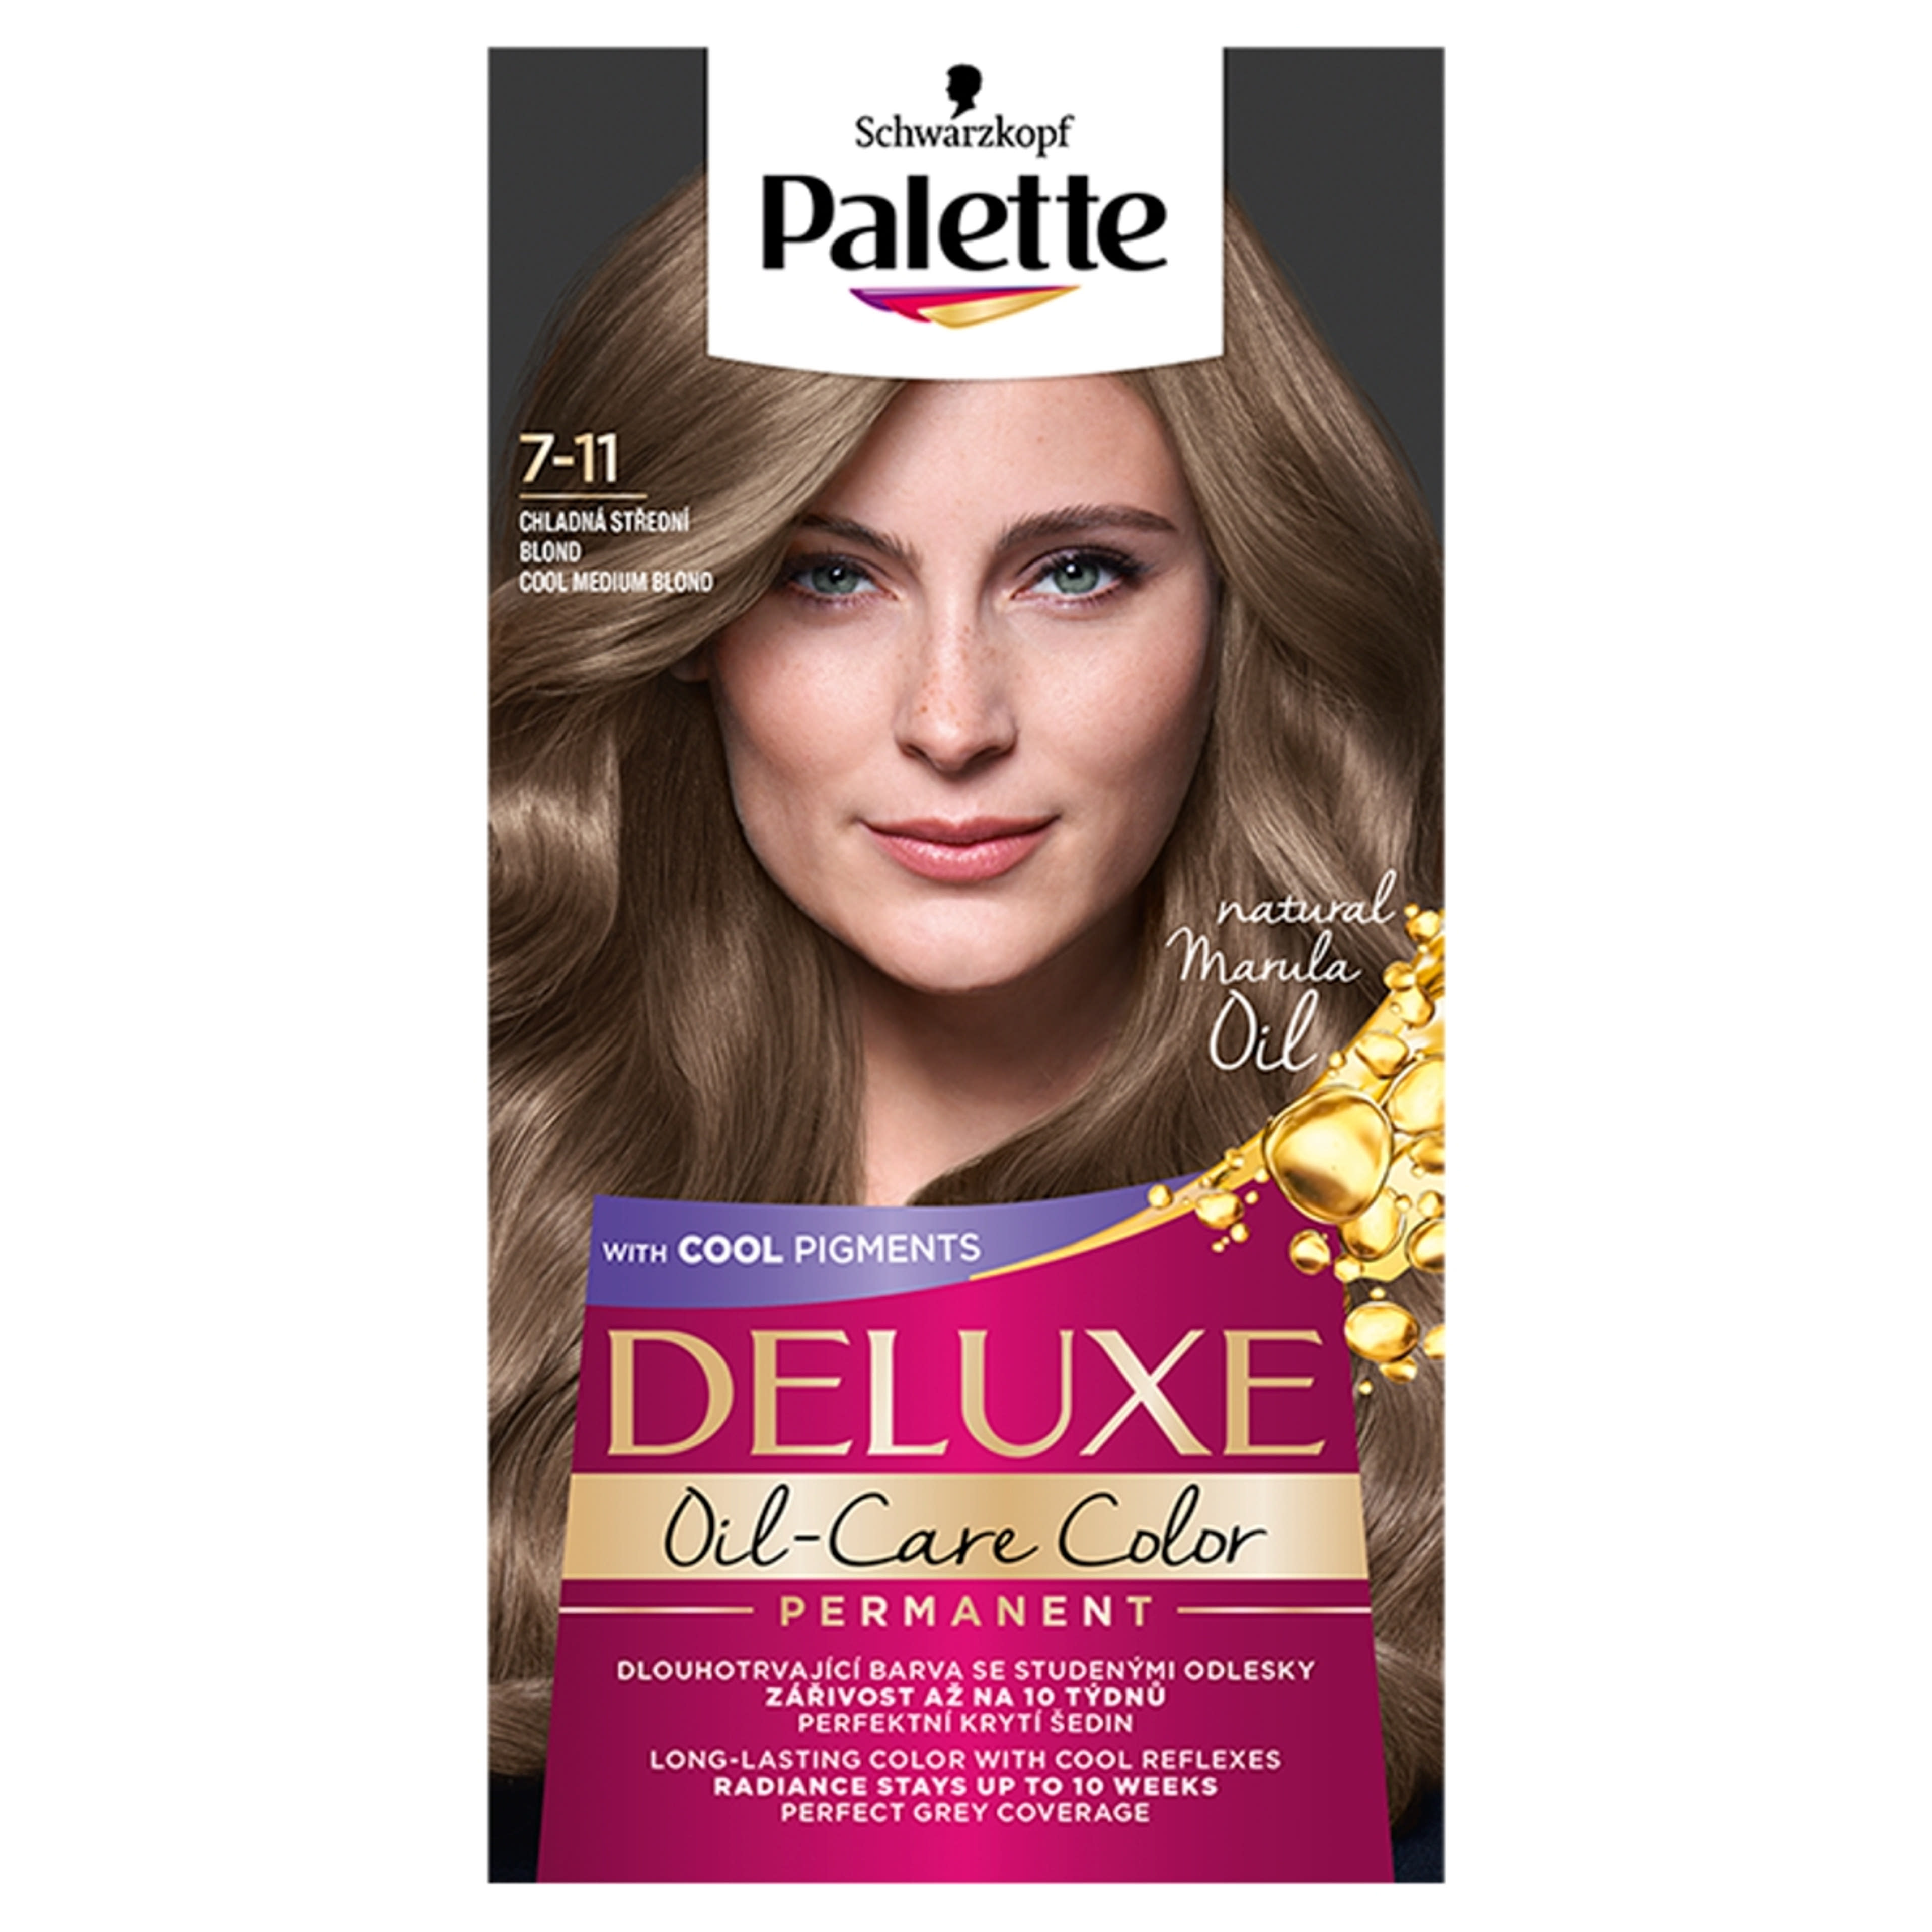 Palette Deluxe tartós hajfesték 7-11 Hűvös szőkésbarna - 1 db-1